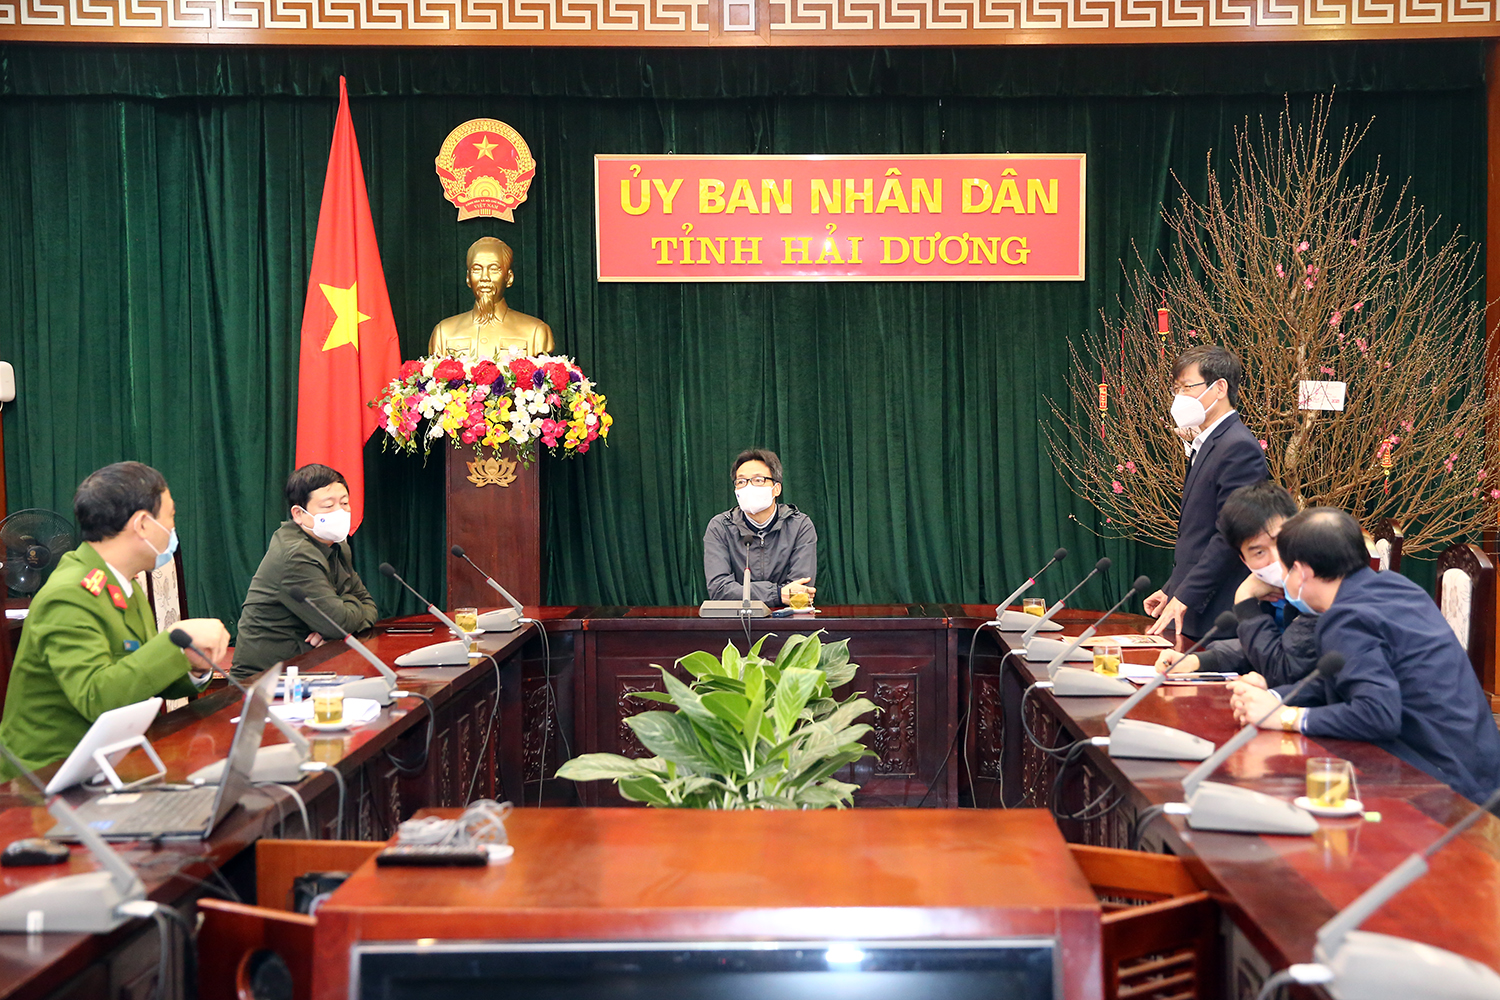 Phó Thủ tướng Vũ Đức Đam kiểm tra dịch ở Chí Linh, Đông Triều